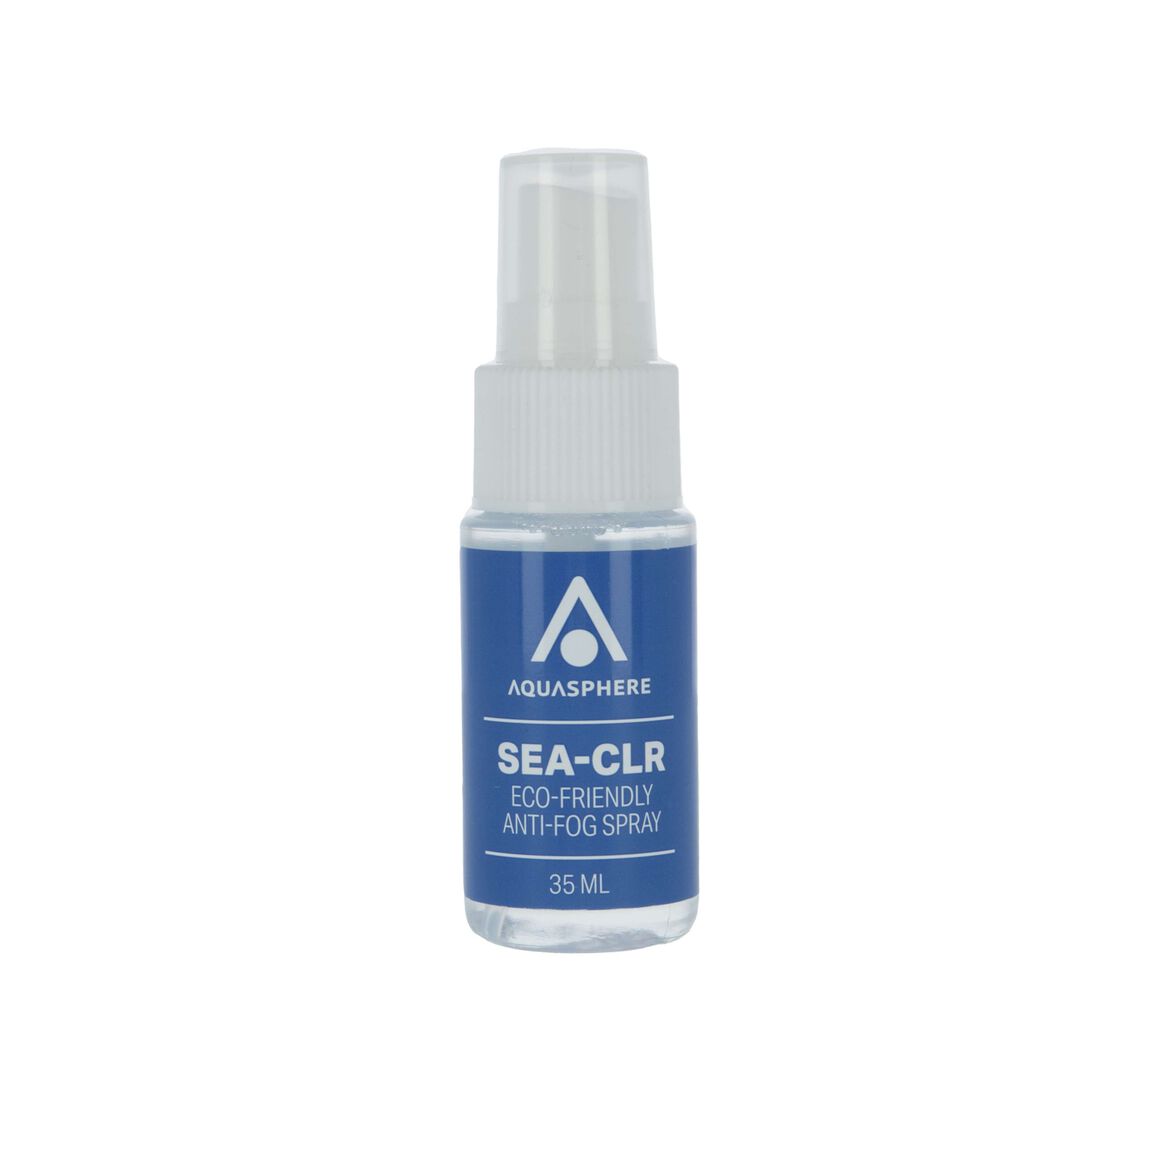 Aquasphere Sea Clr Anti-Fog Spray 35ml